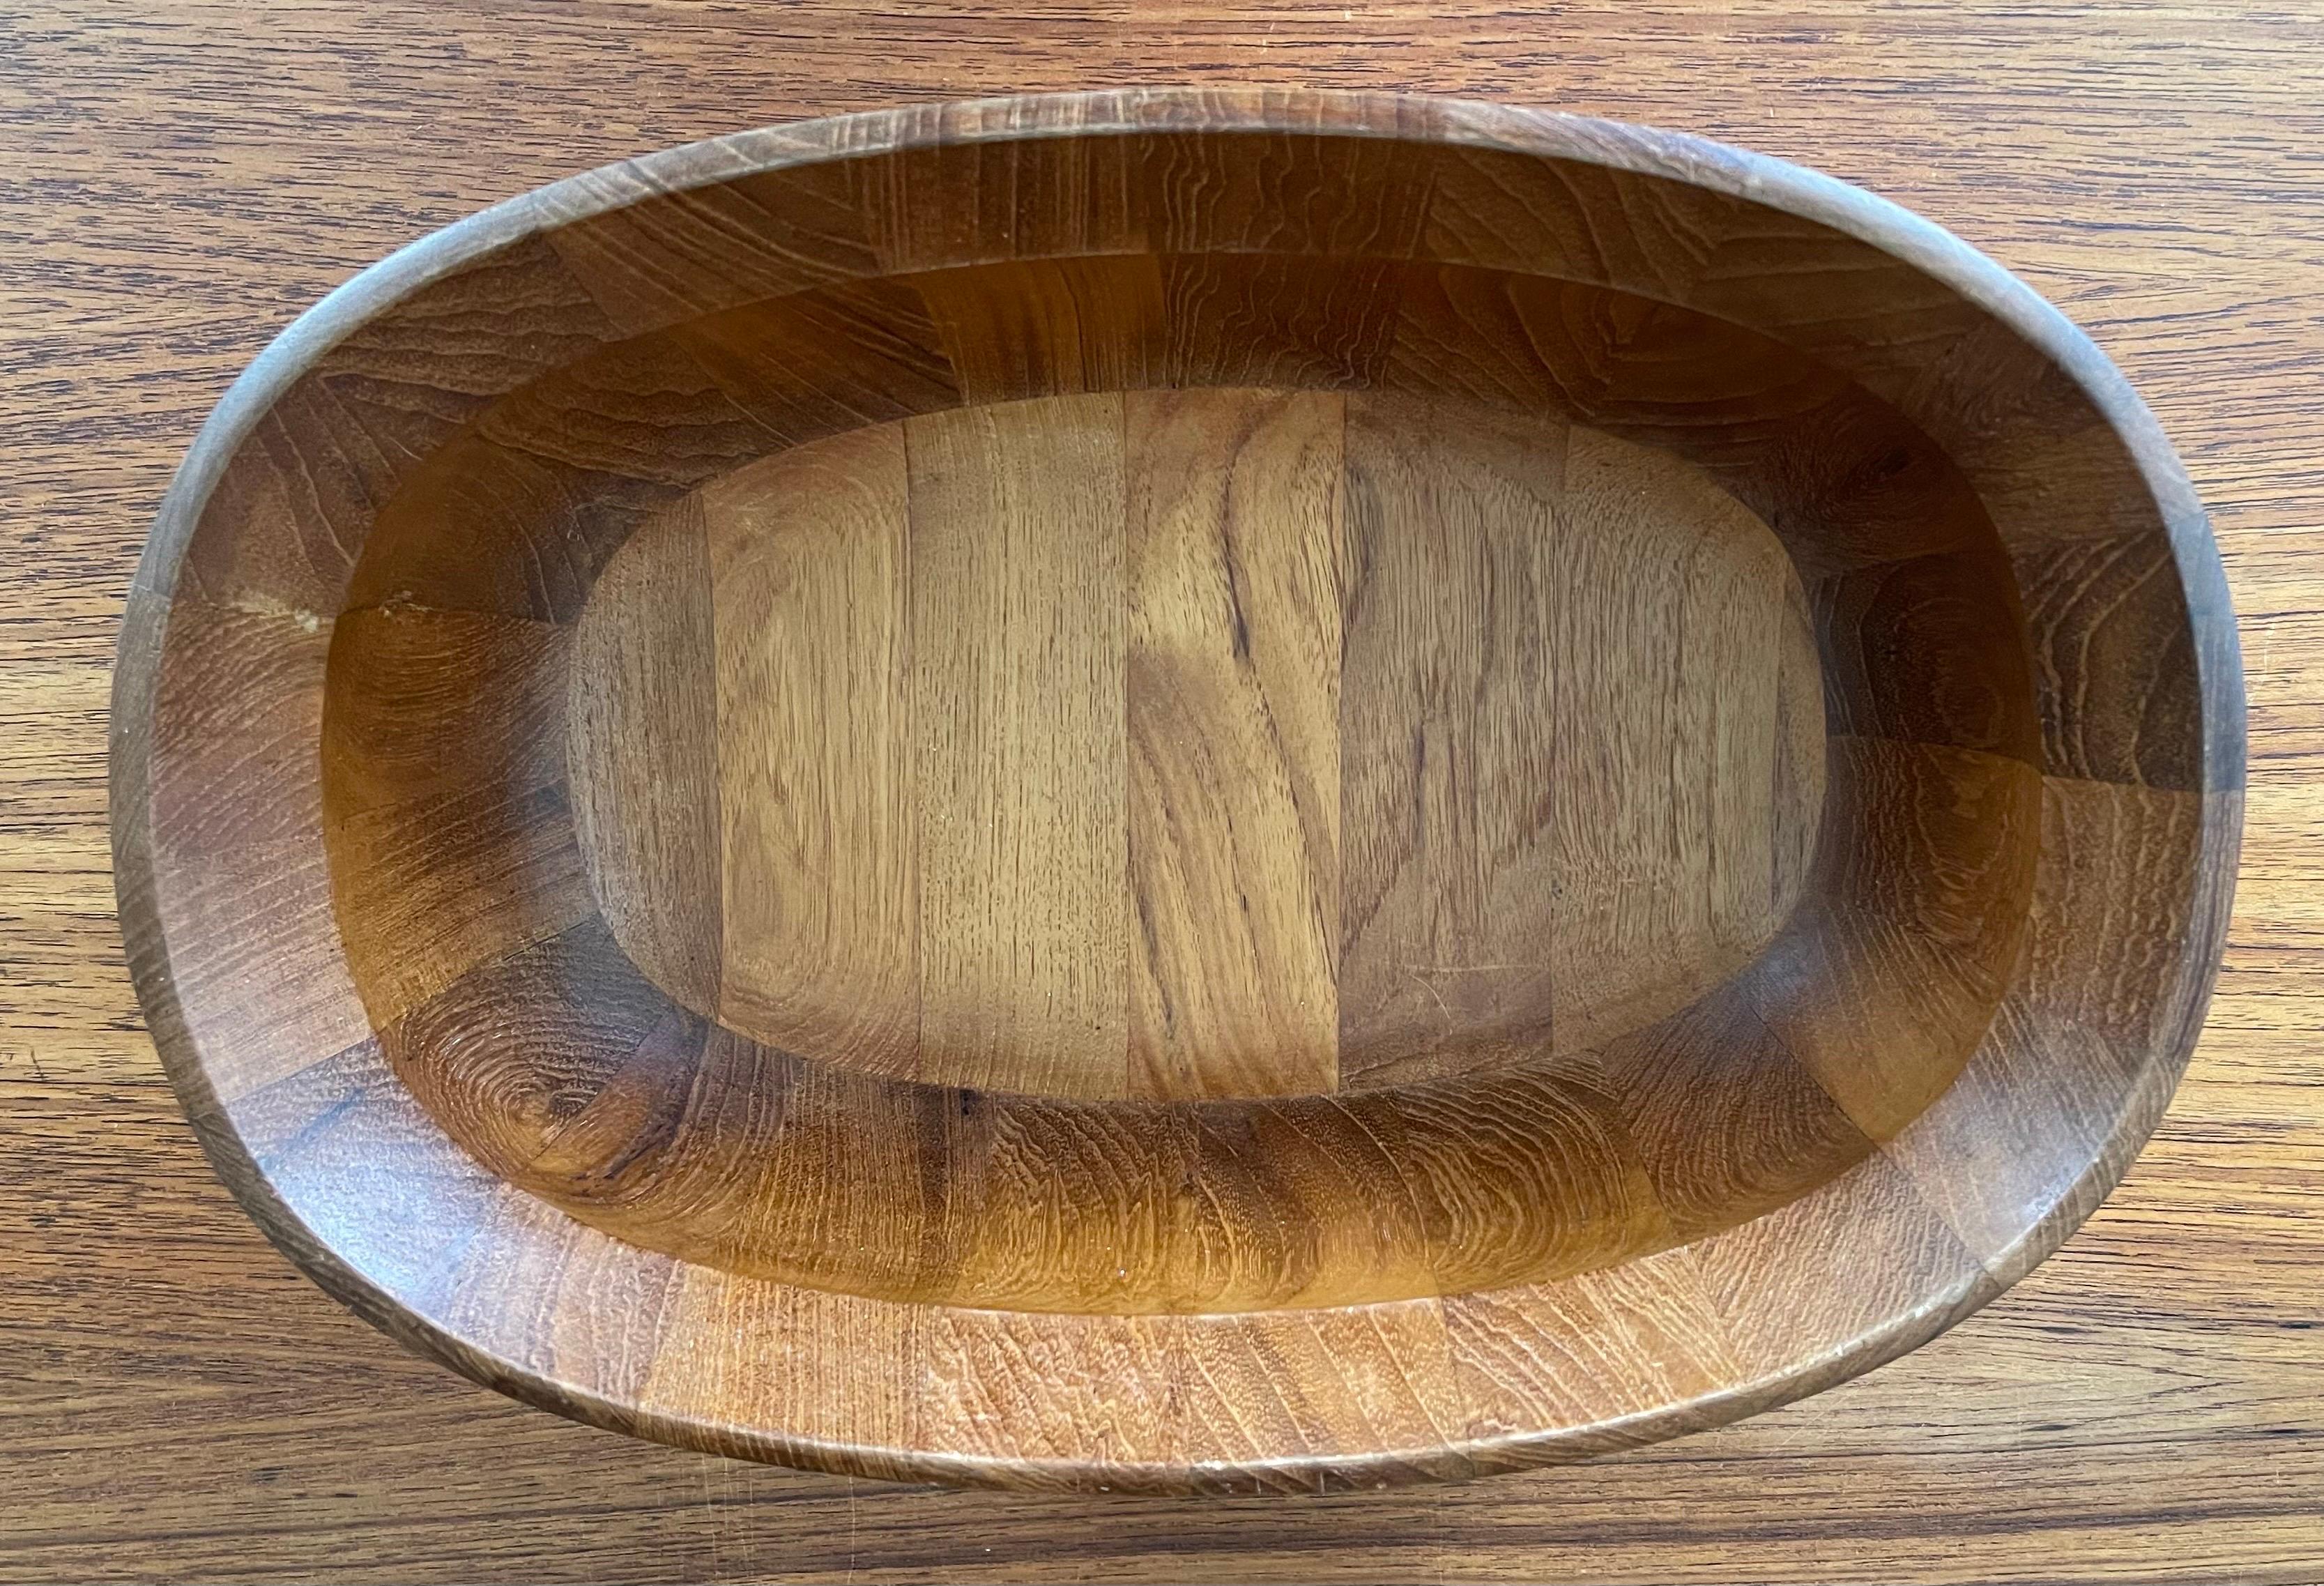 Danish Modern Oval Shaped Staved Teak Bowl by Jens Quistgaard for Dansk For Sale 3